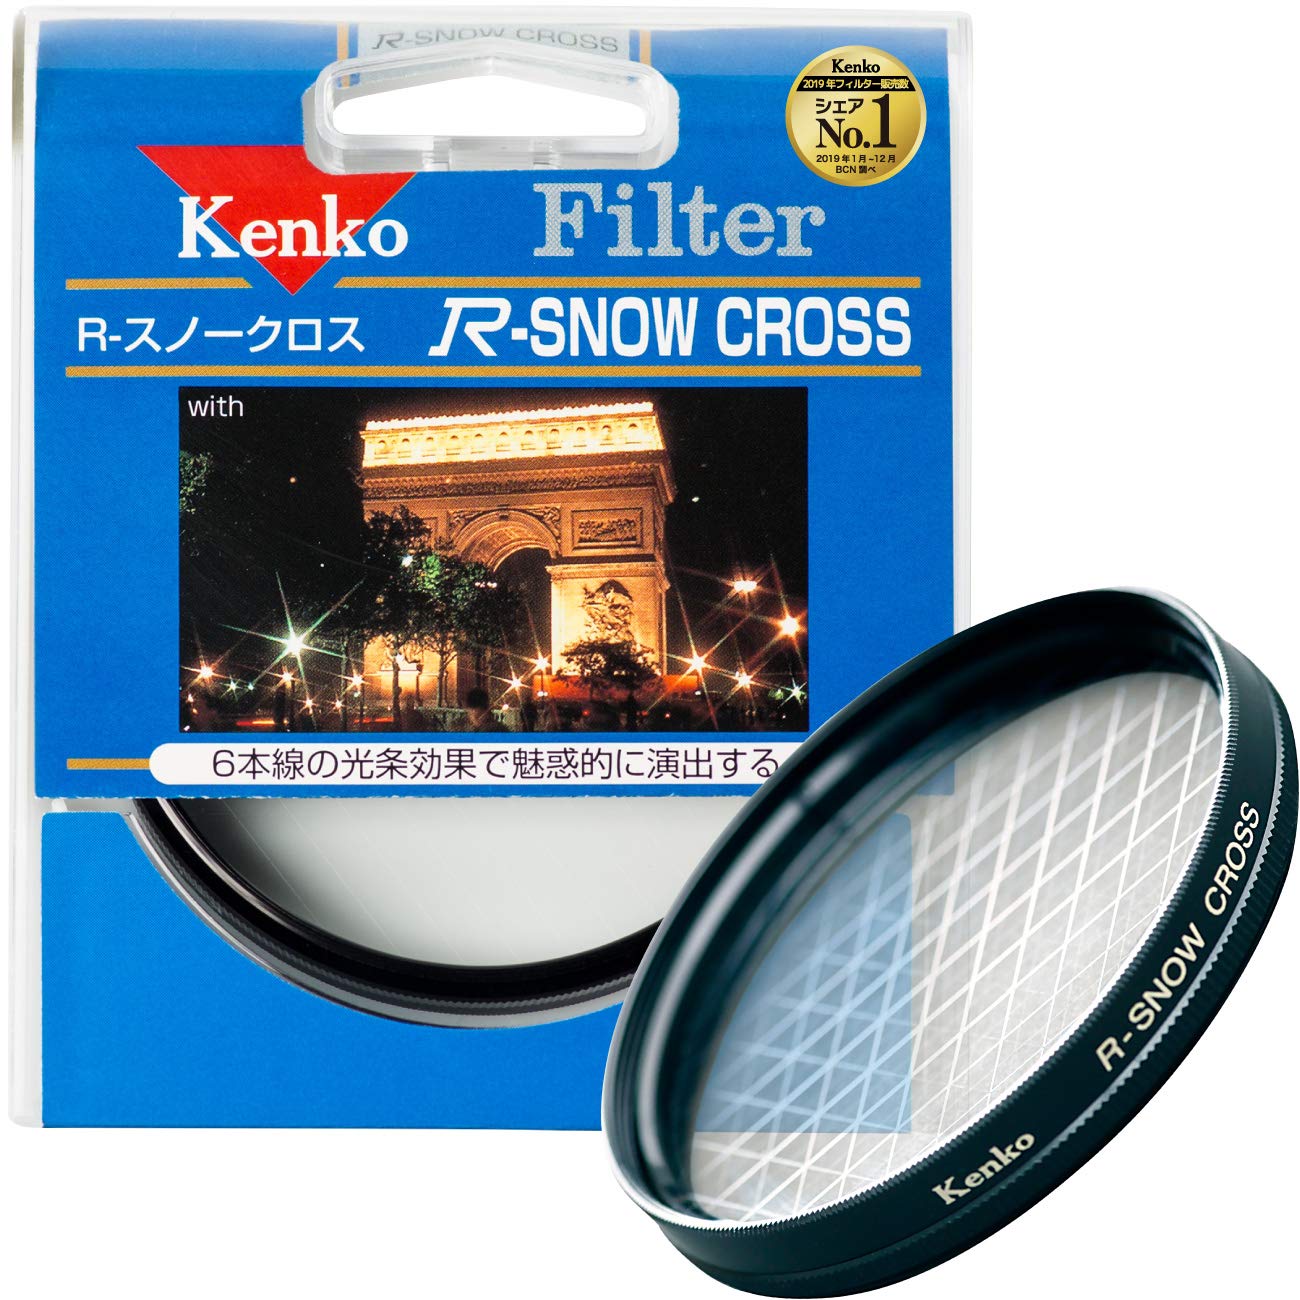 Kenko レンズフィルター R-スノークロス 55mm クロス効果用 355213